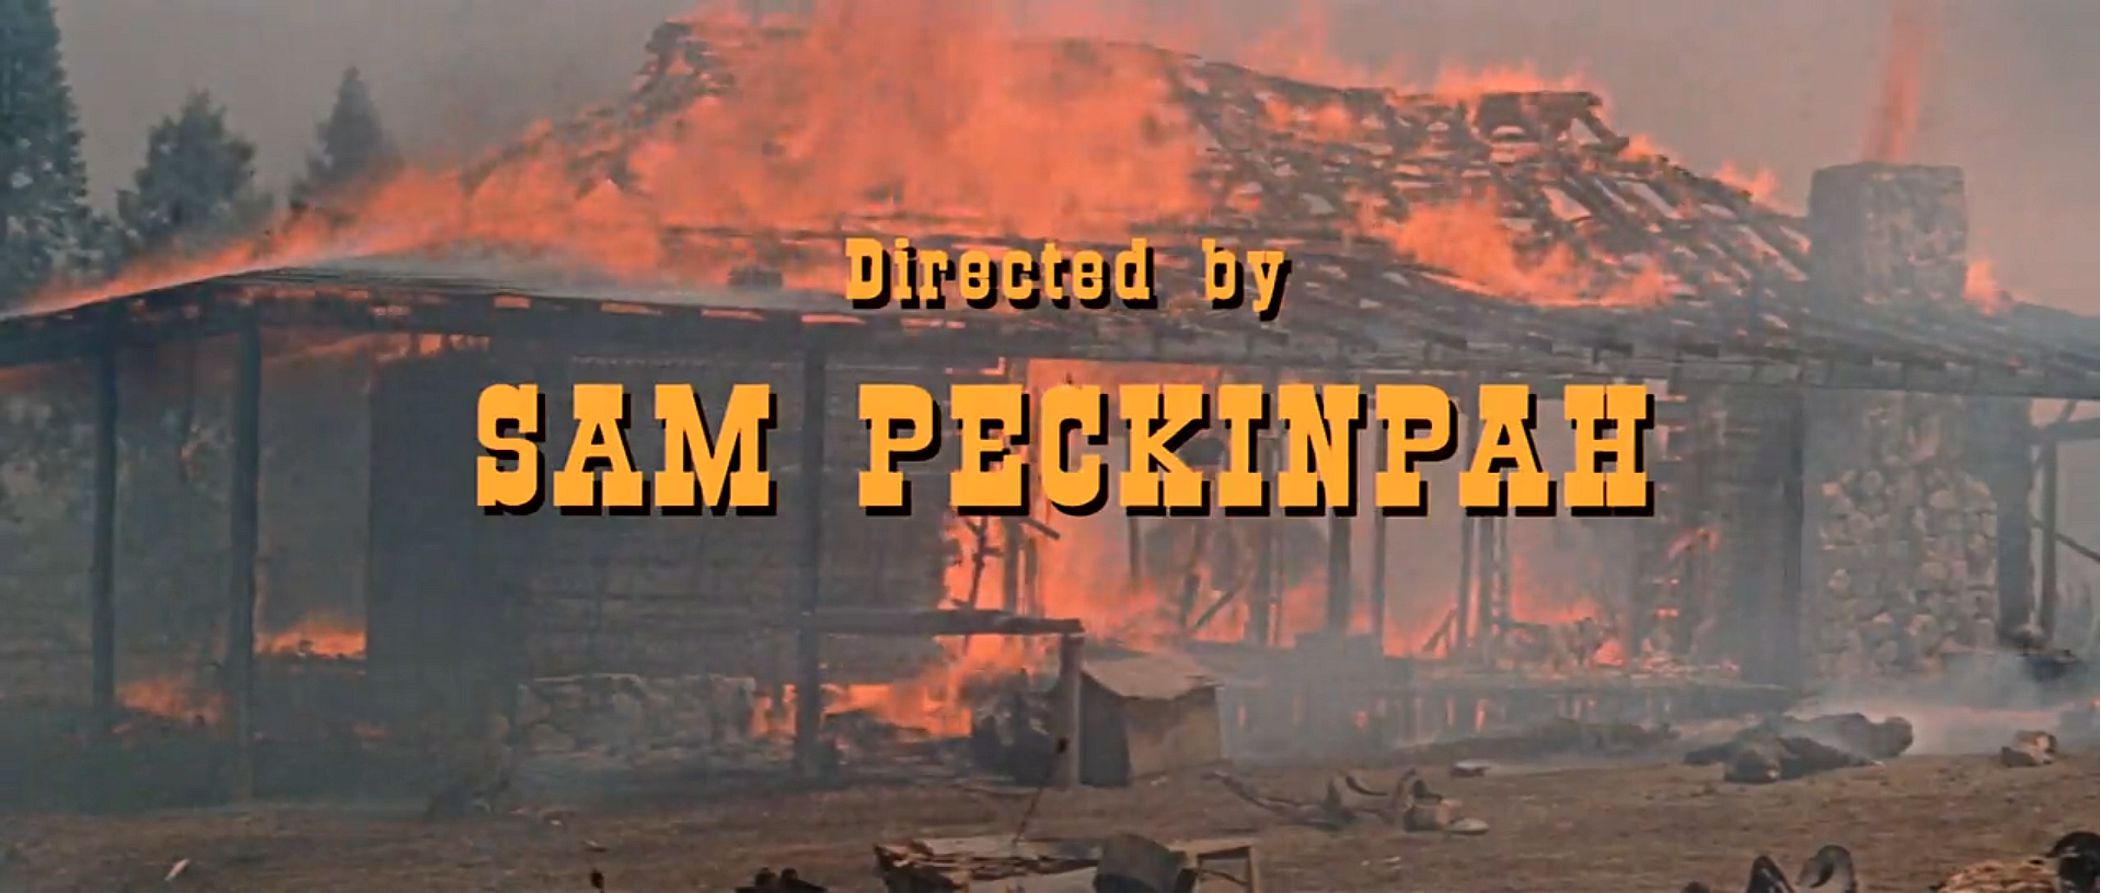 Major Dundee Sam Peckinpah